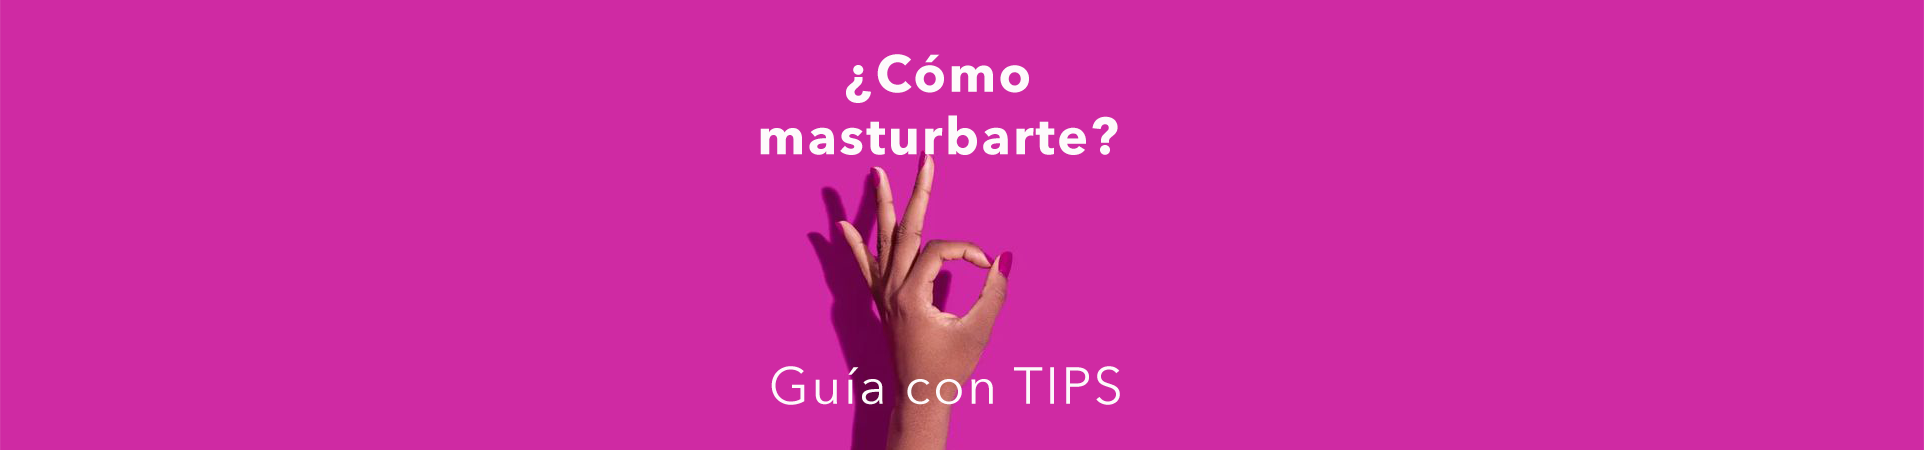 Cómo masturbarse: guía con tips l Erotika.